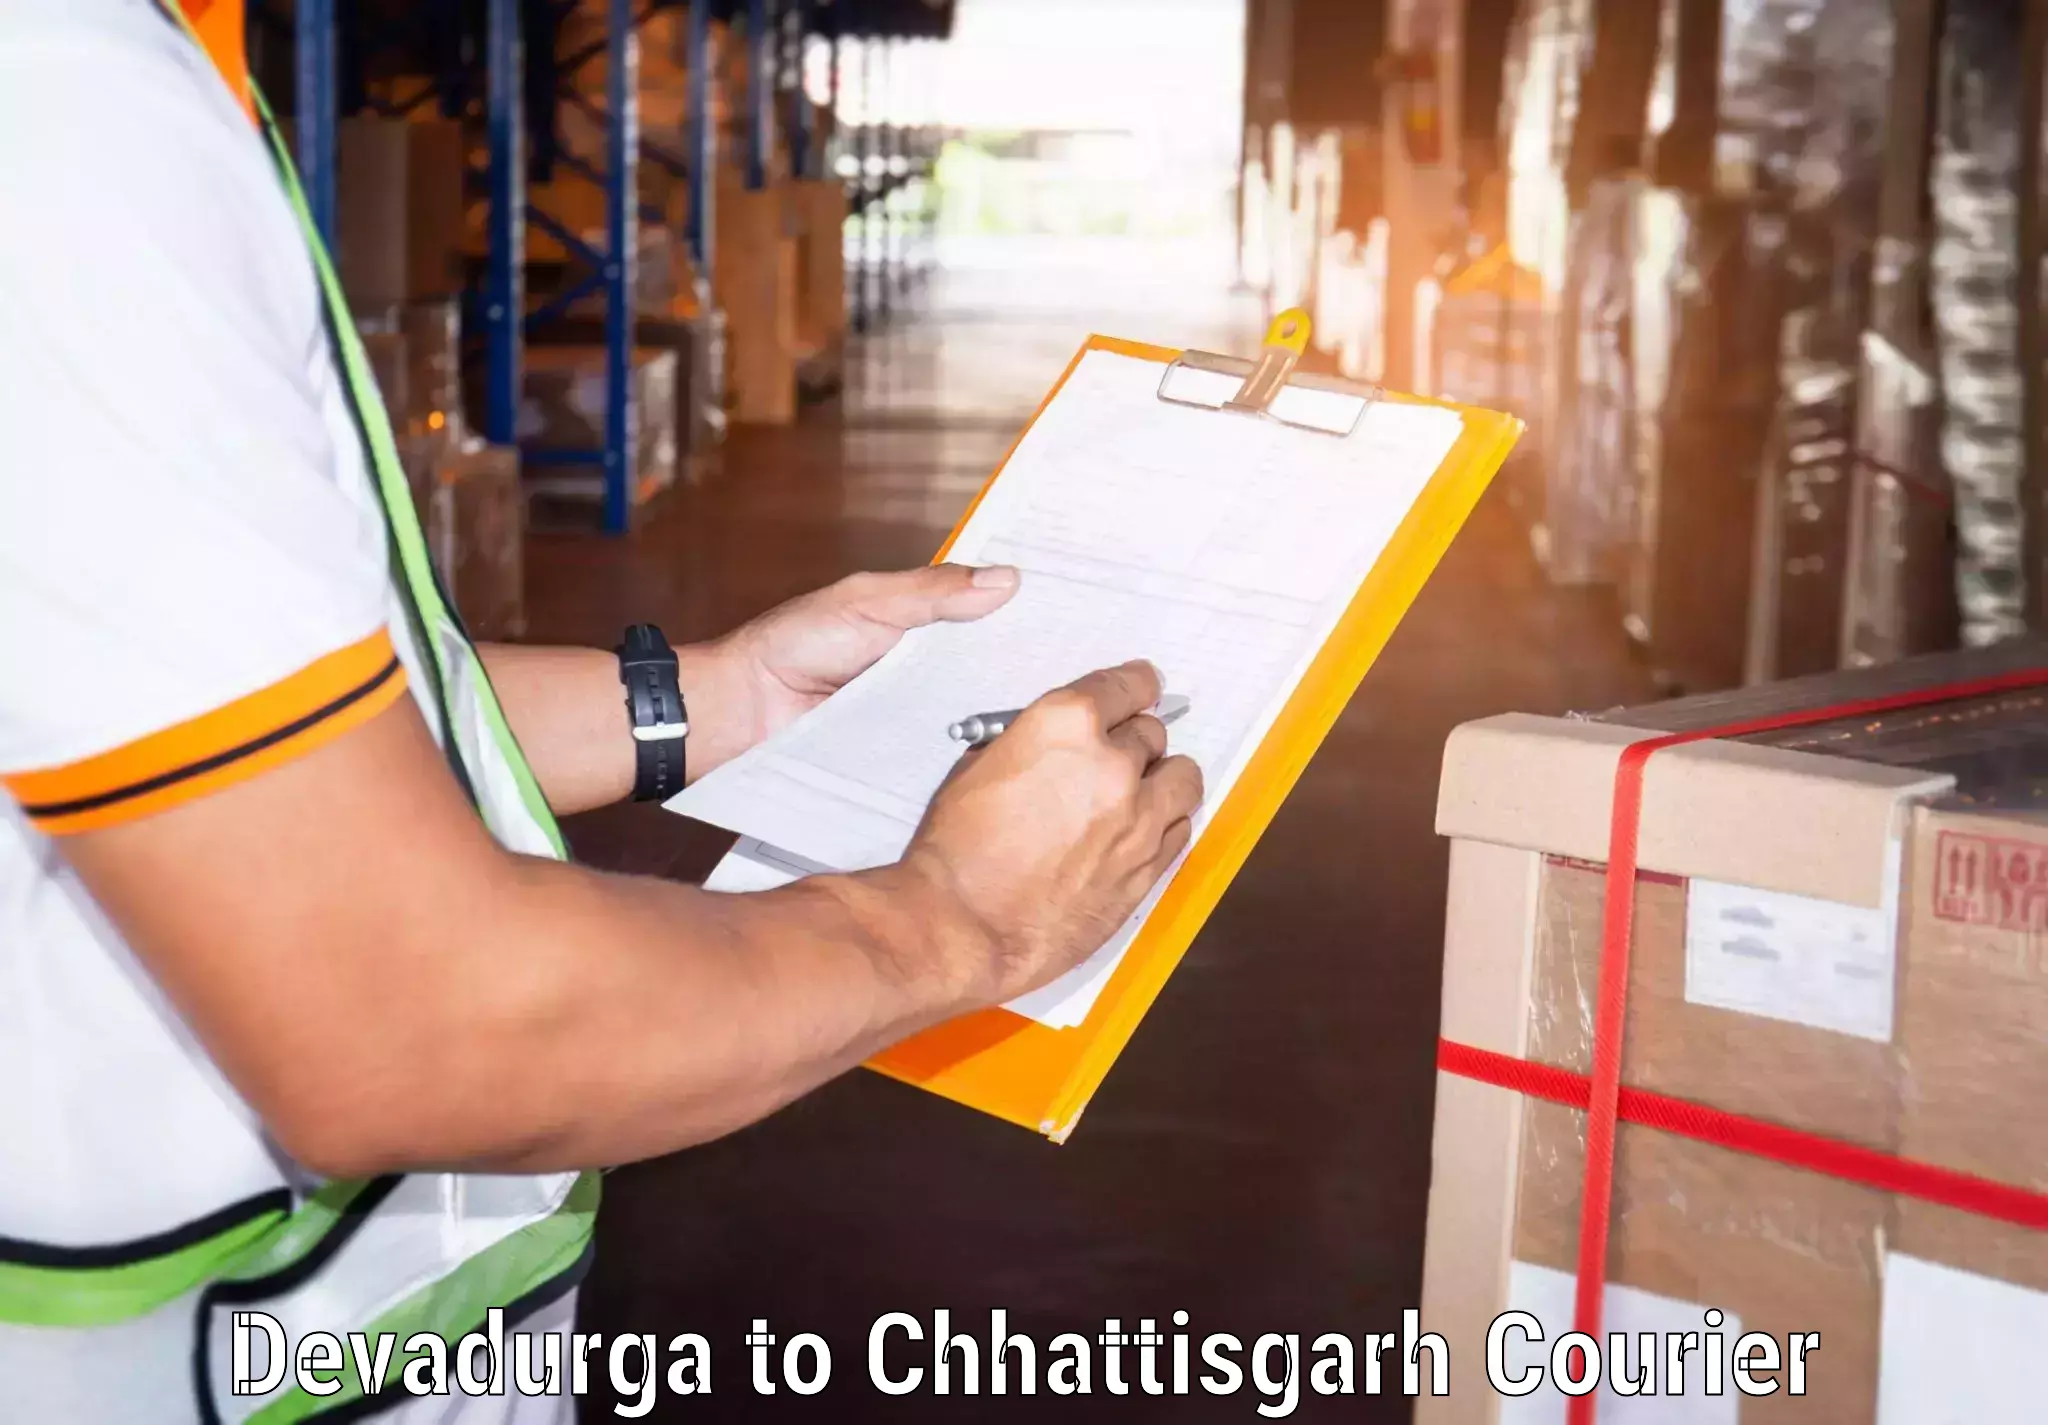 Comprehensive delivery network in Devadurga to Chhattisgarh